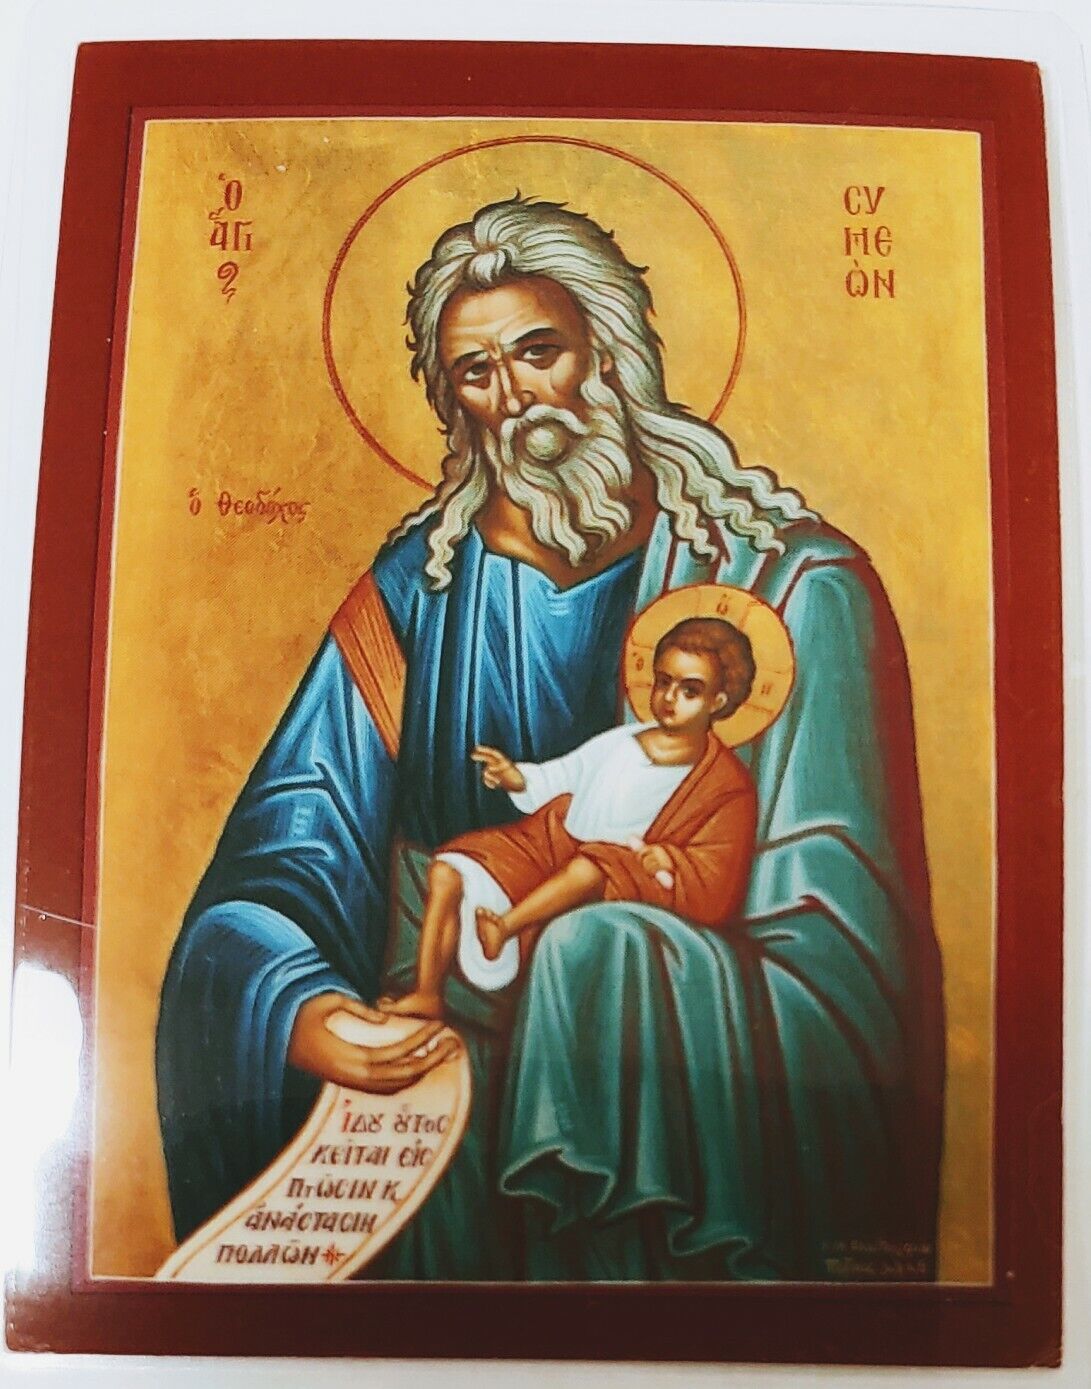 Saint Simeon laminated icon Prayer Card св.Симеон ламиниров иконa